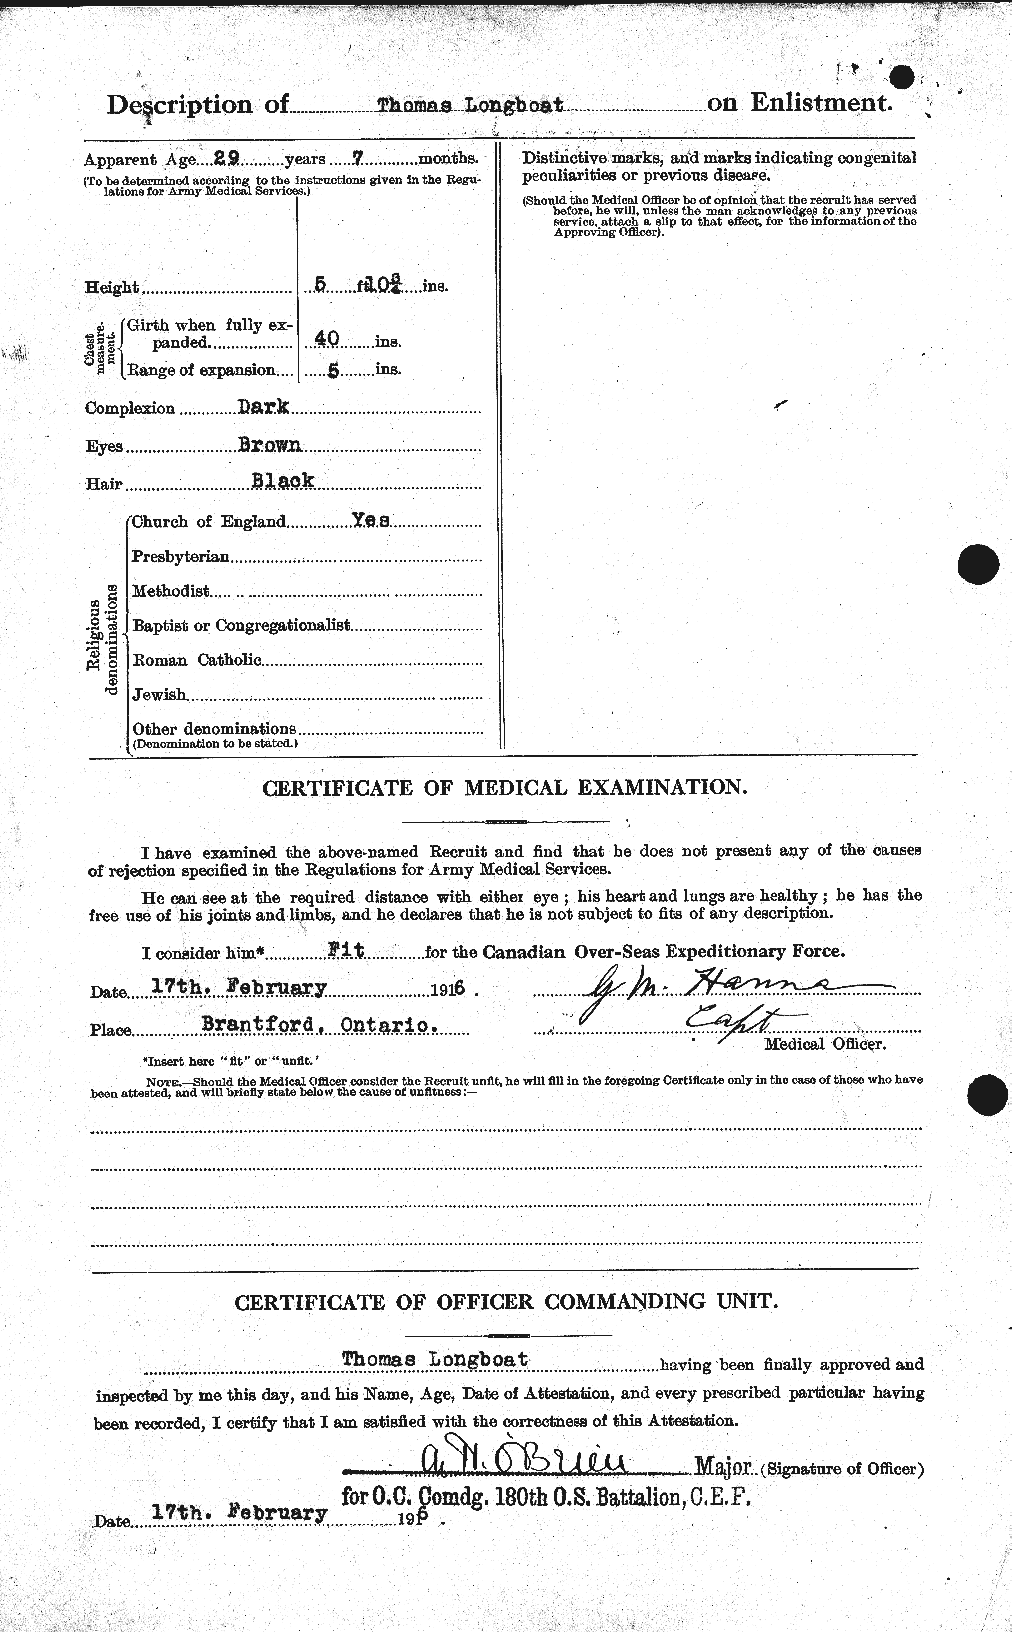 Dossiers du Personnel de la Première Guerre mondiale - CEC 470942b